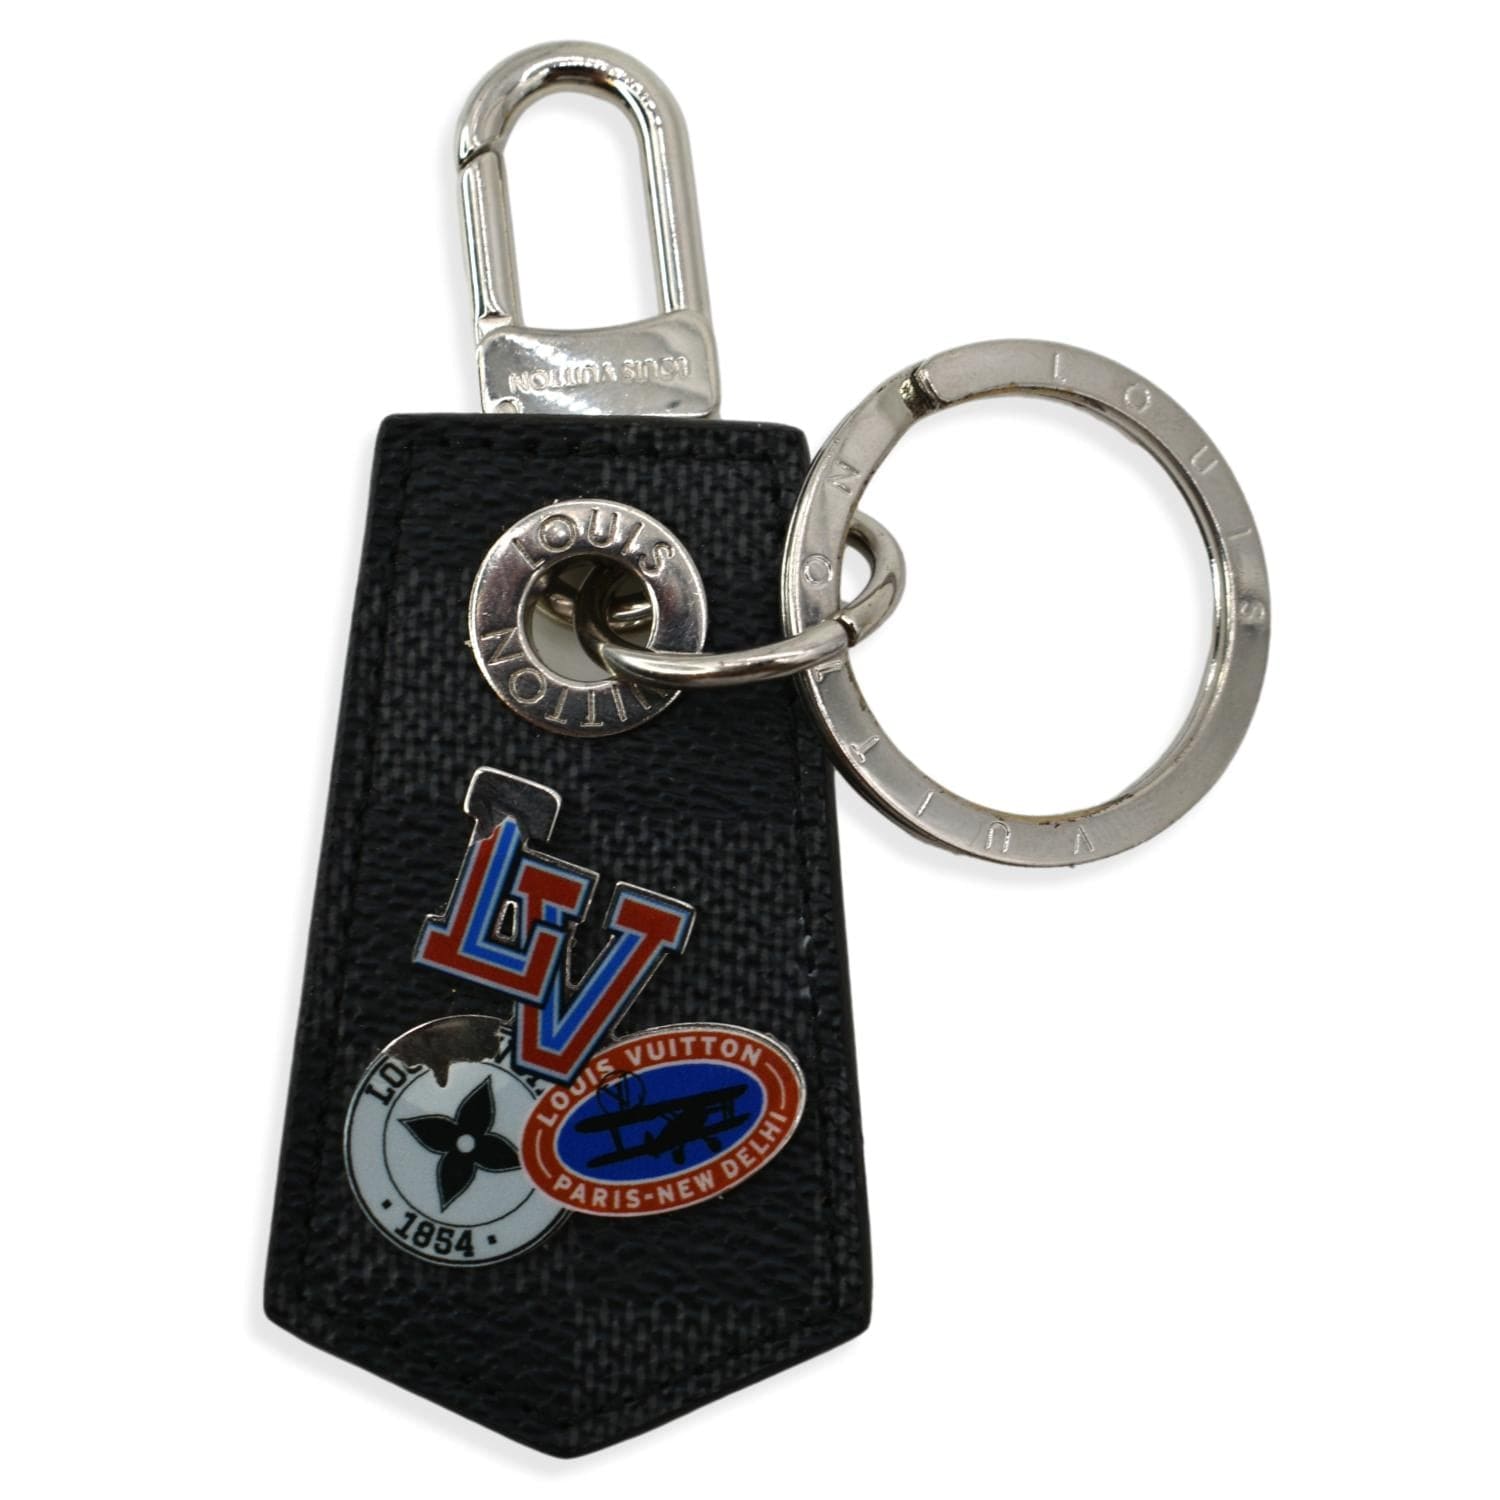 louis-vuitton key chain holder charm